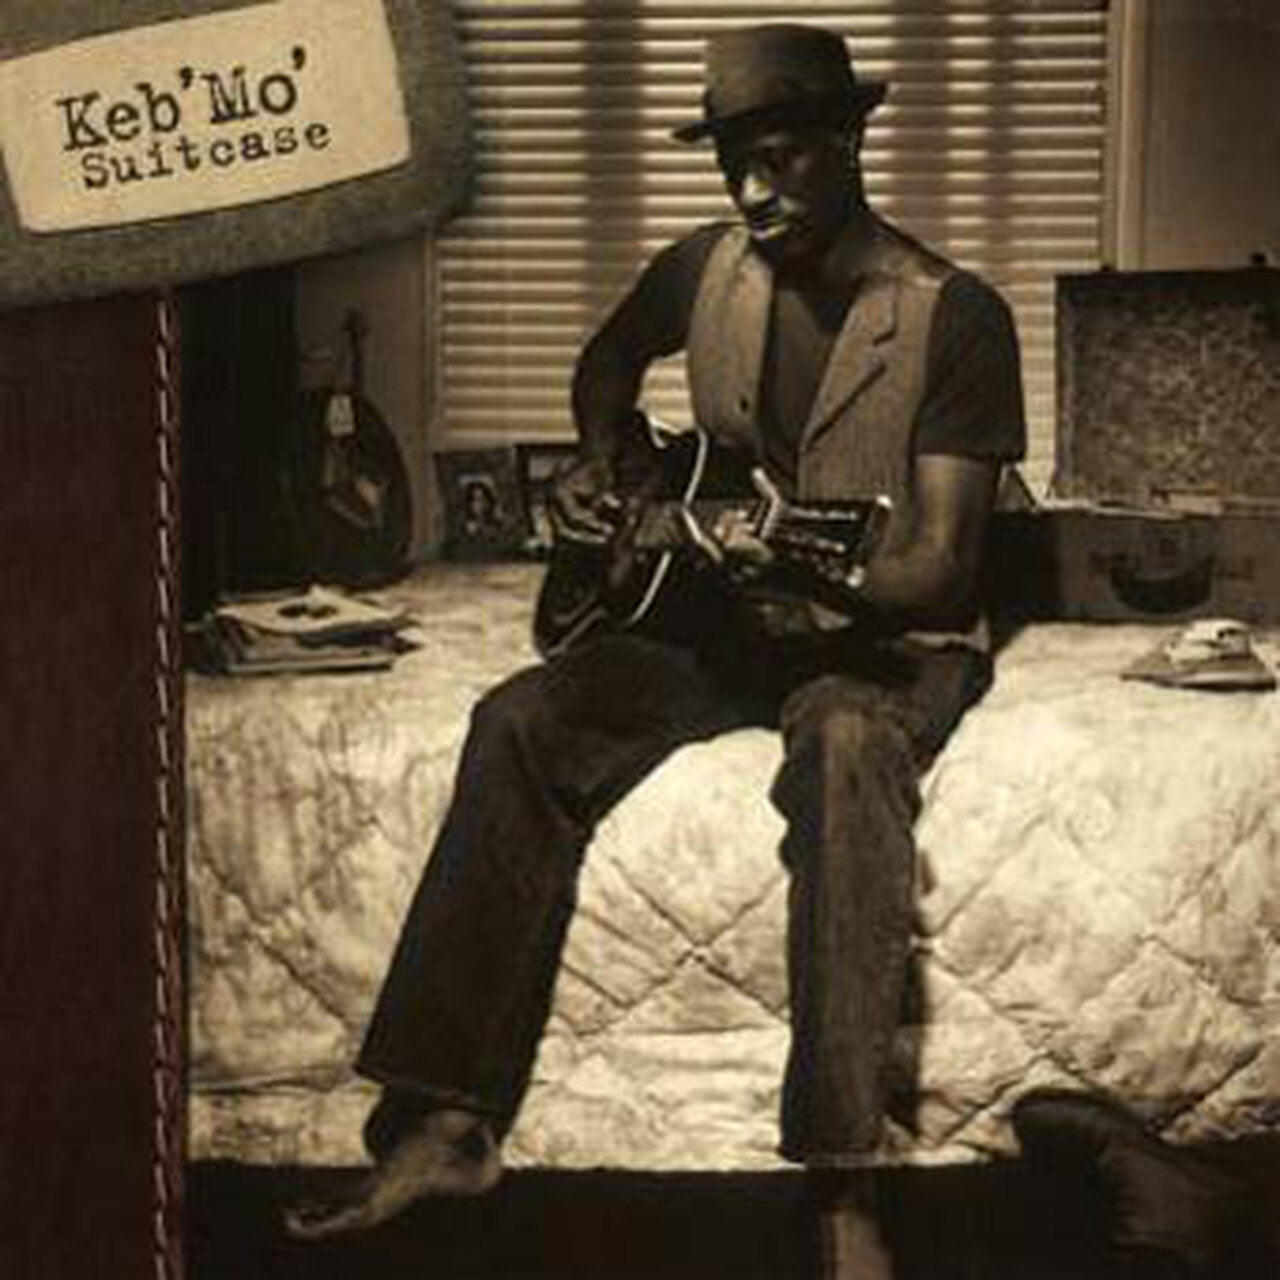 Keb Mo - Suitcase - Pure Pleasure LP